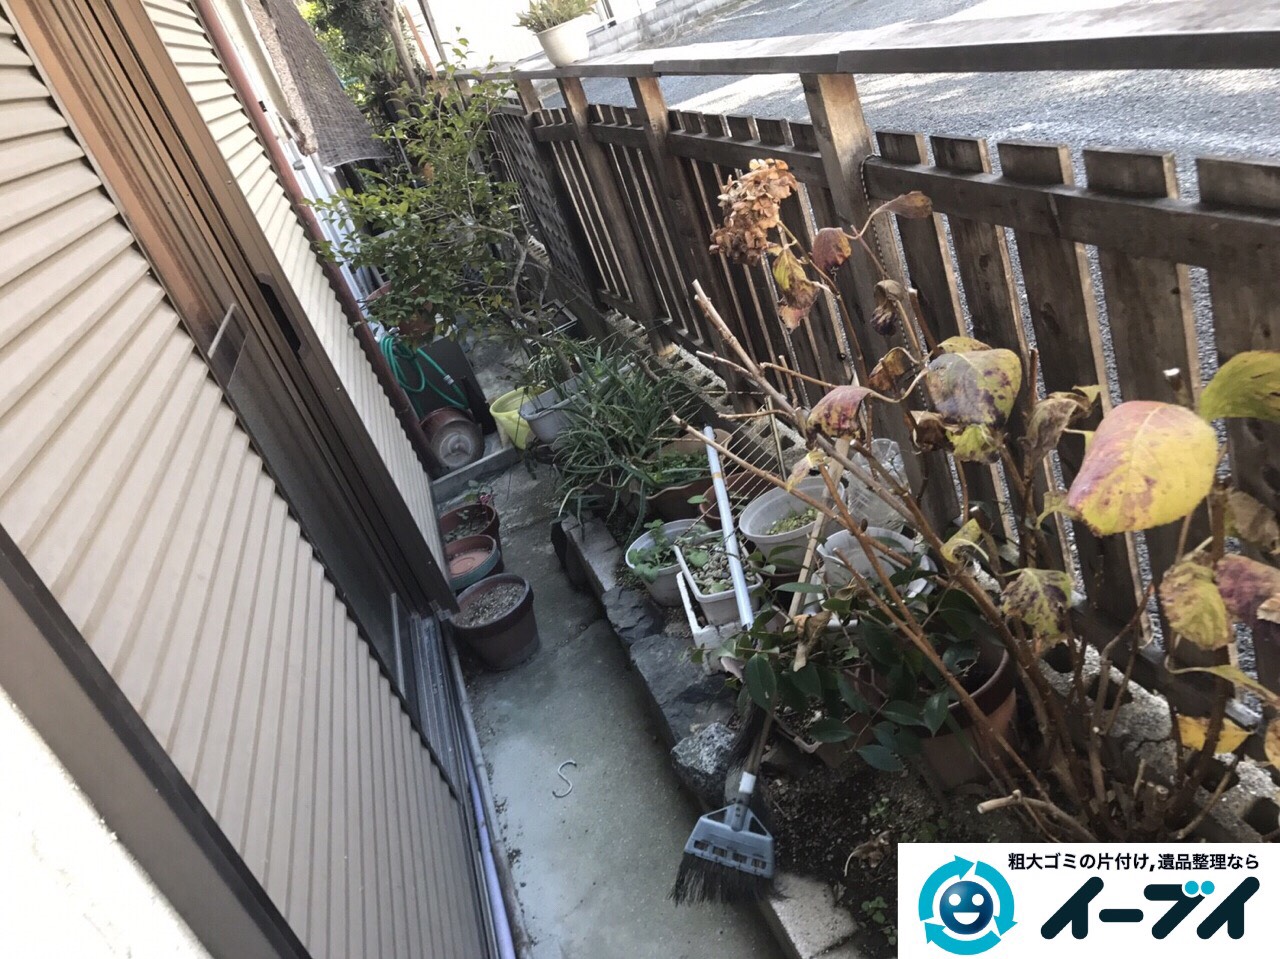 2017年3月20日大阪府大阪市東淀川区で庭の植木や廃品を片付け不用品回収をしました。写真6